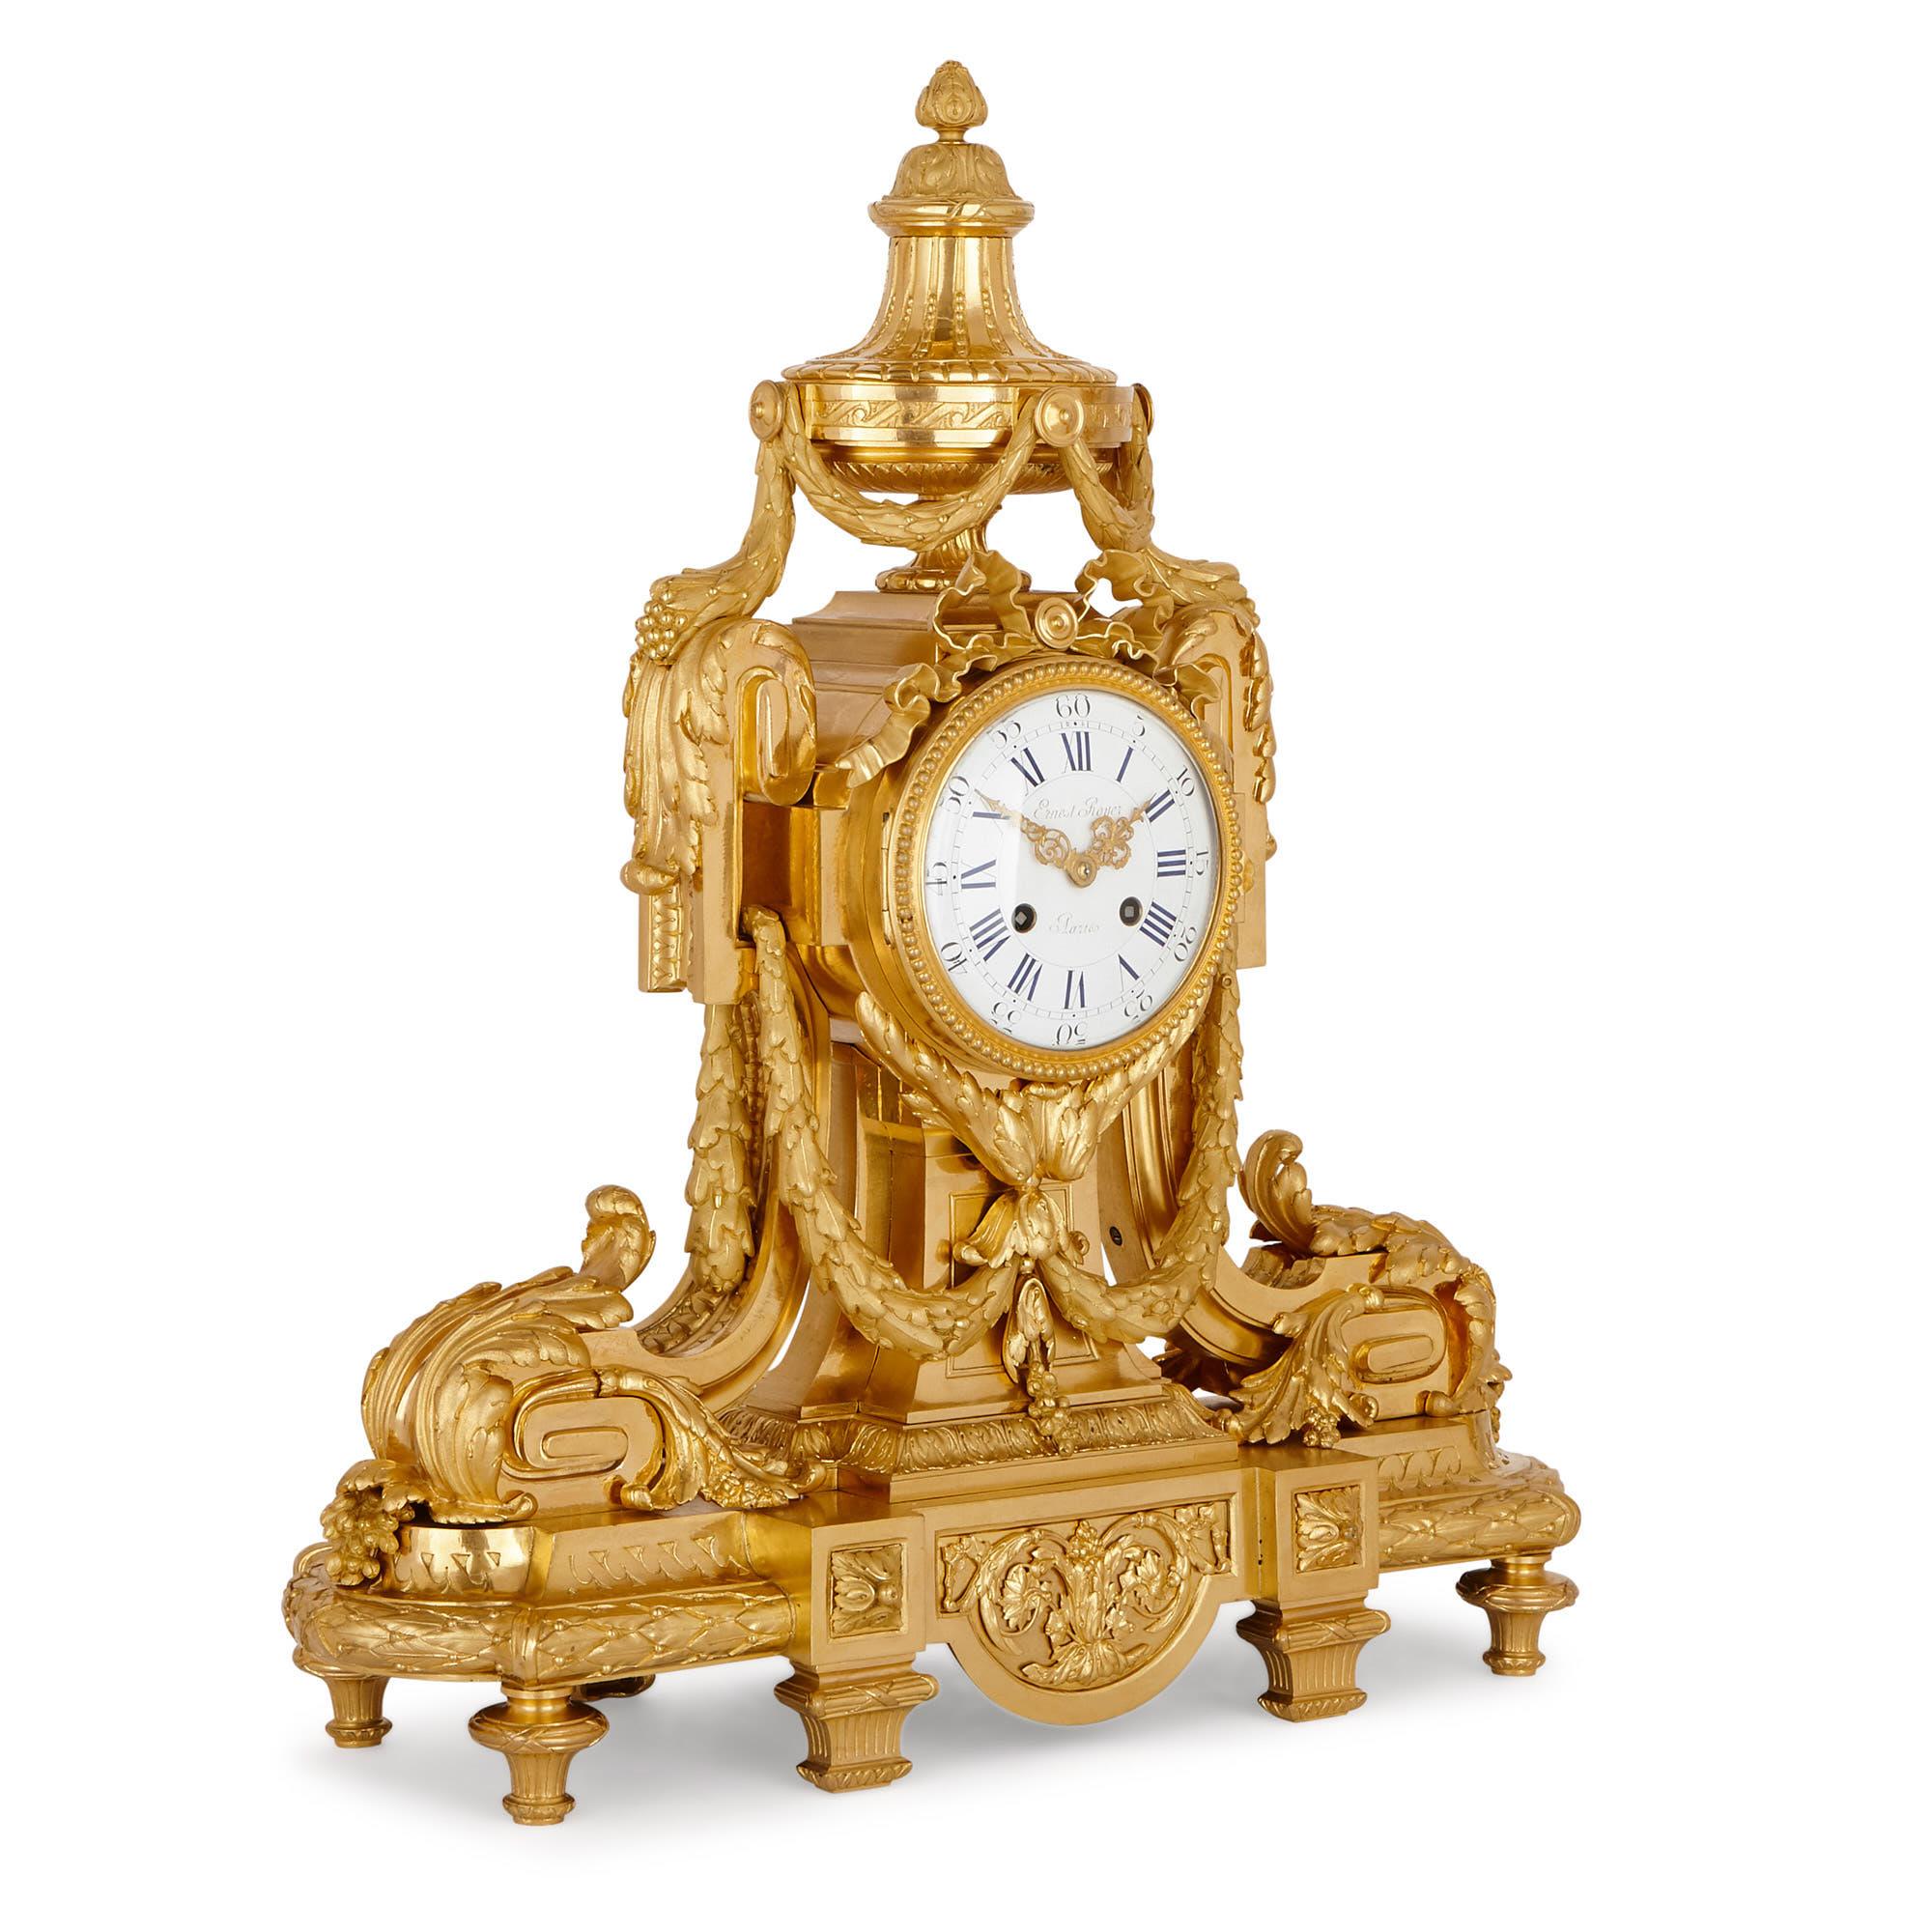 Dieses schöne Uhrenset aus vergoldeter Bronze (Ormolu) wurde um 1870 in Frankreich hergestellt. Die Garnitur ist in einem reichen Rokoko-Stil gestaltet, nach der dekorativen Kunst der Periode Ludwigs XV. (1715-1774).

Das Set besteht aus einer